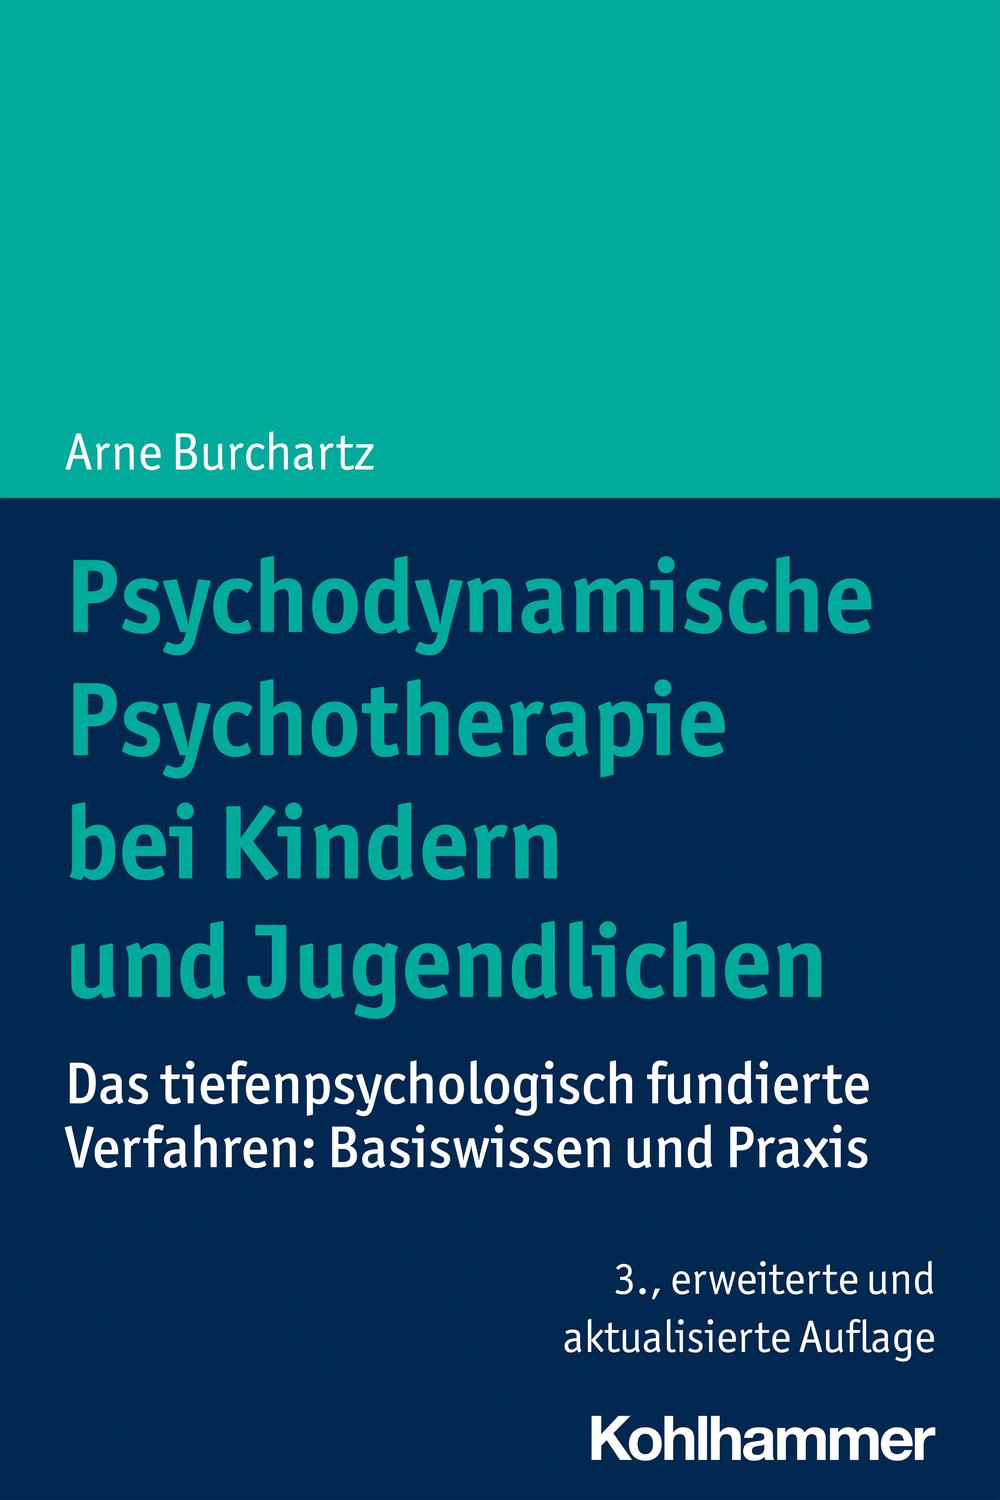 Psychodynamische Psychotherapie bei Kindern und Jugendlichen - Arne Burchartz,,